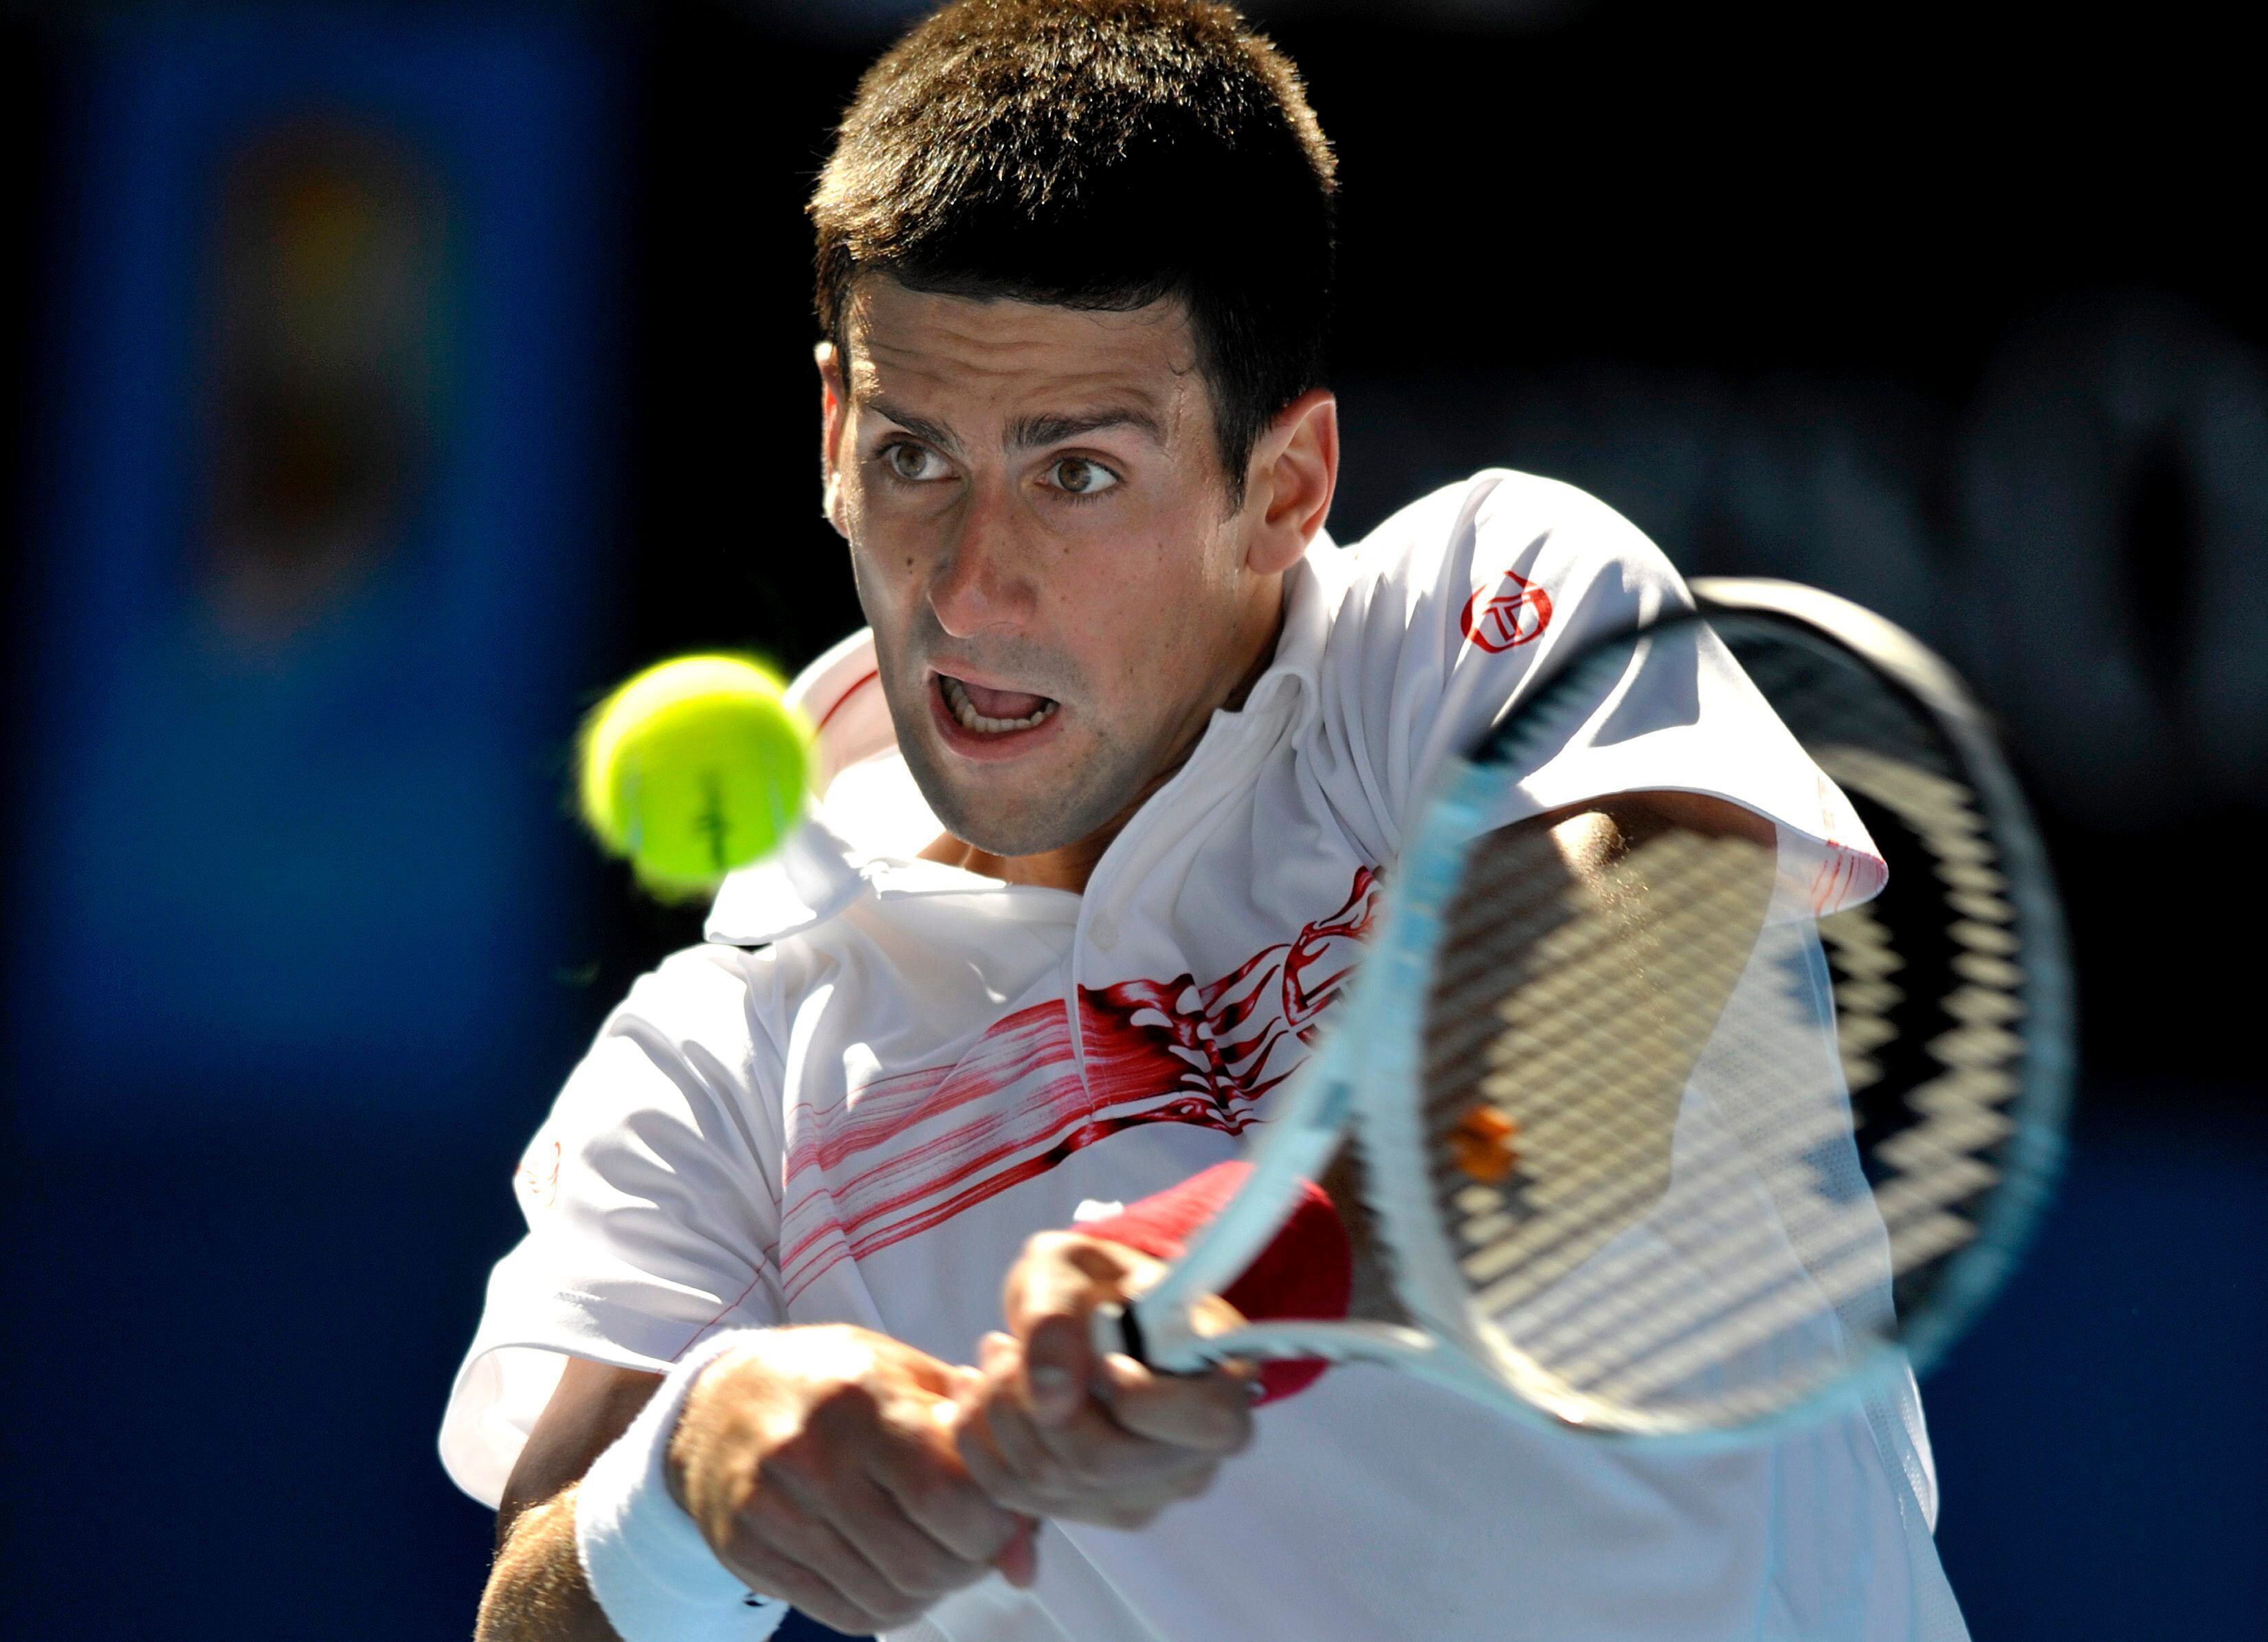 El tenista serbio Novak Djokovic, en una imagen de archivo. EFE/MARTIN PHILBEY
